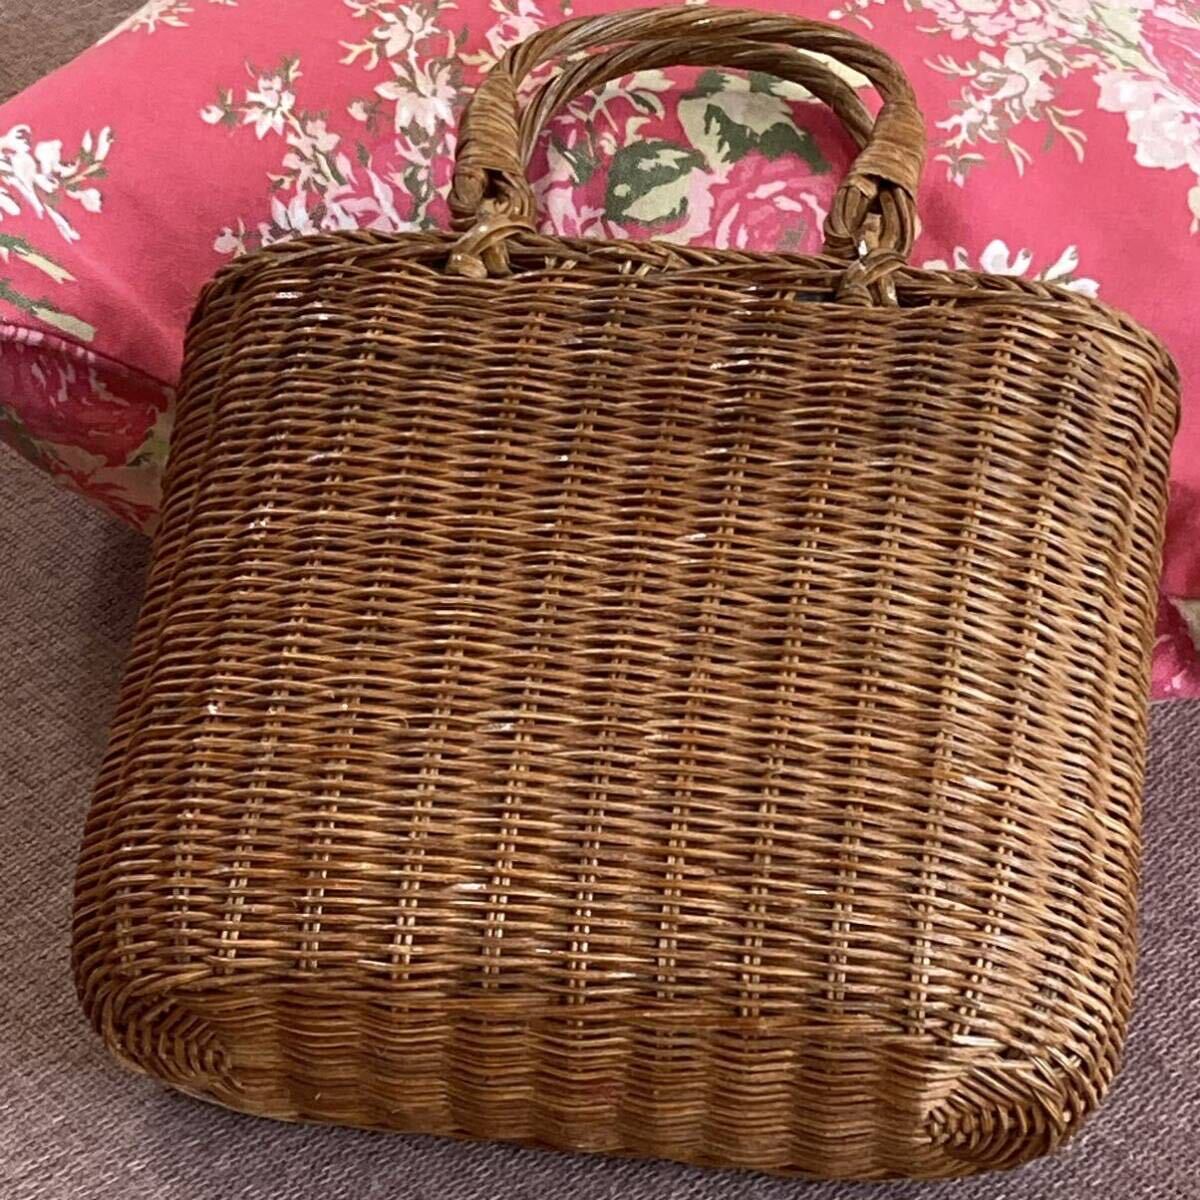  basket bag basket bag handbag handbag bag Showa Retro 